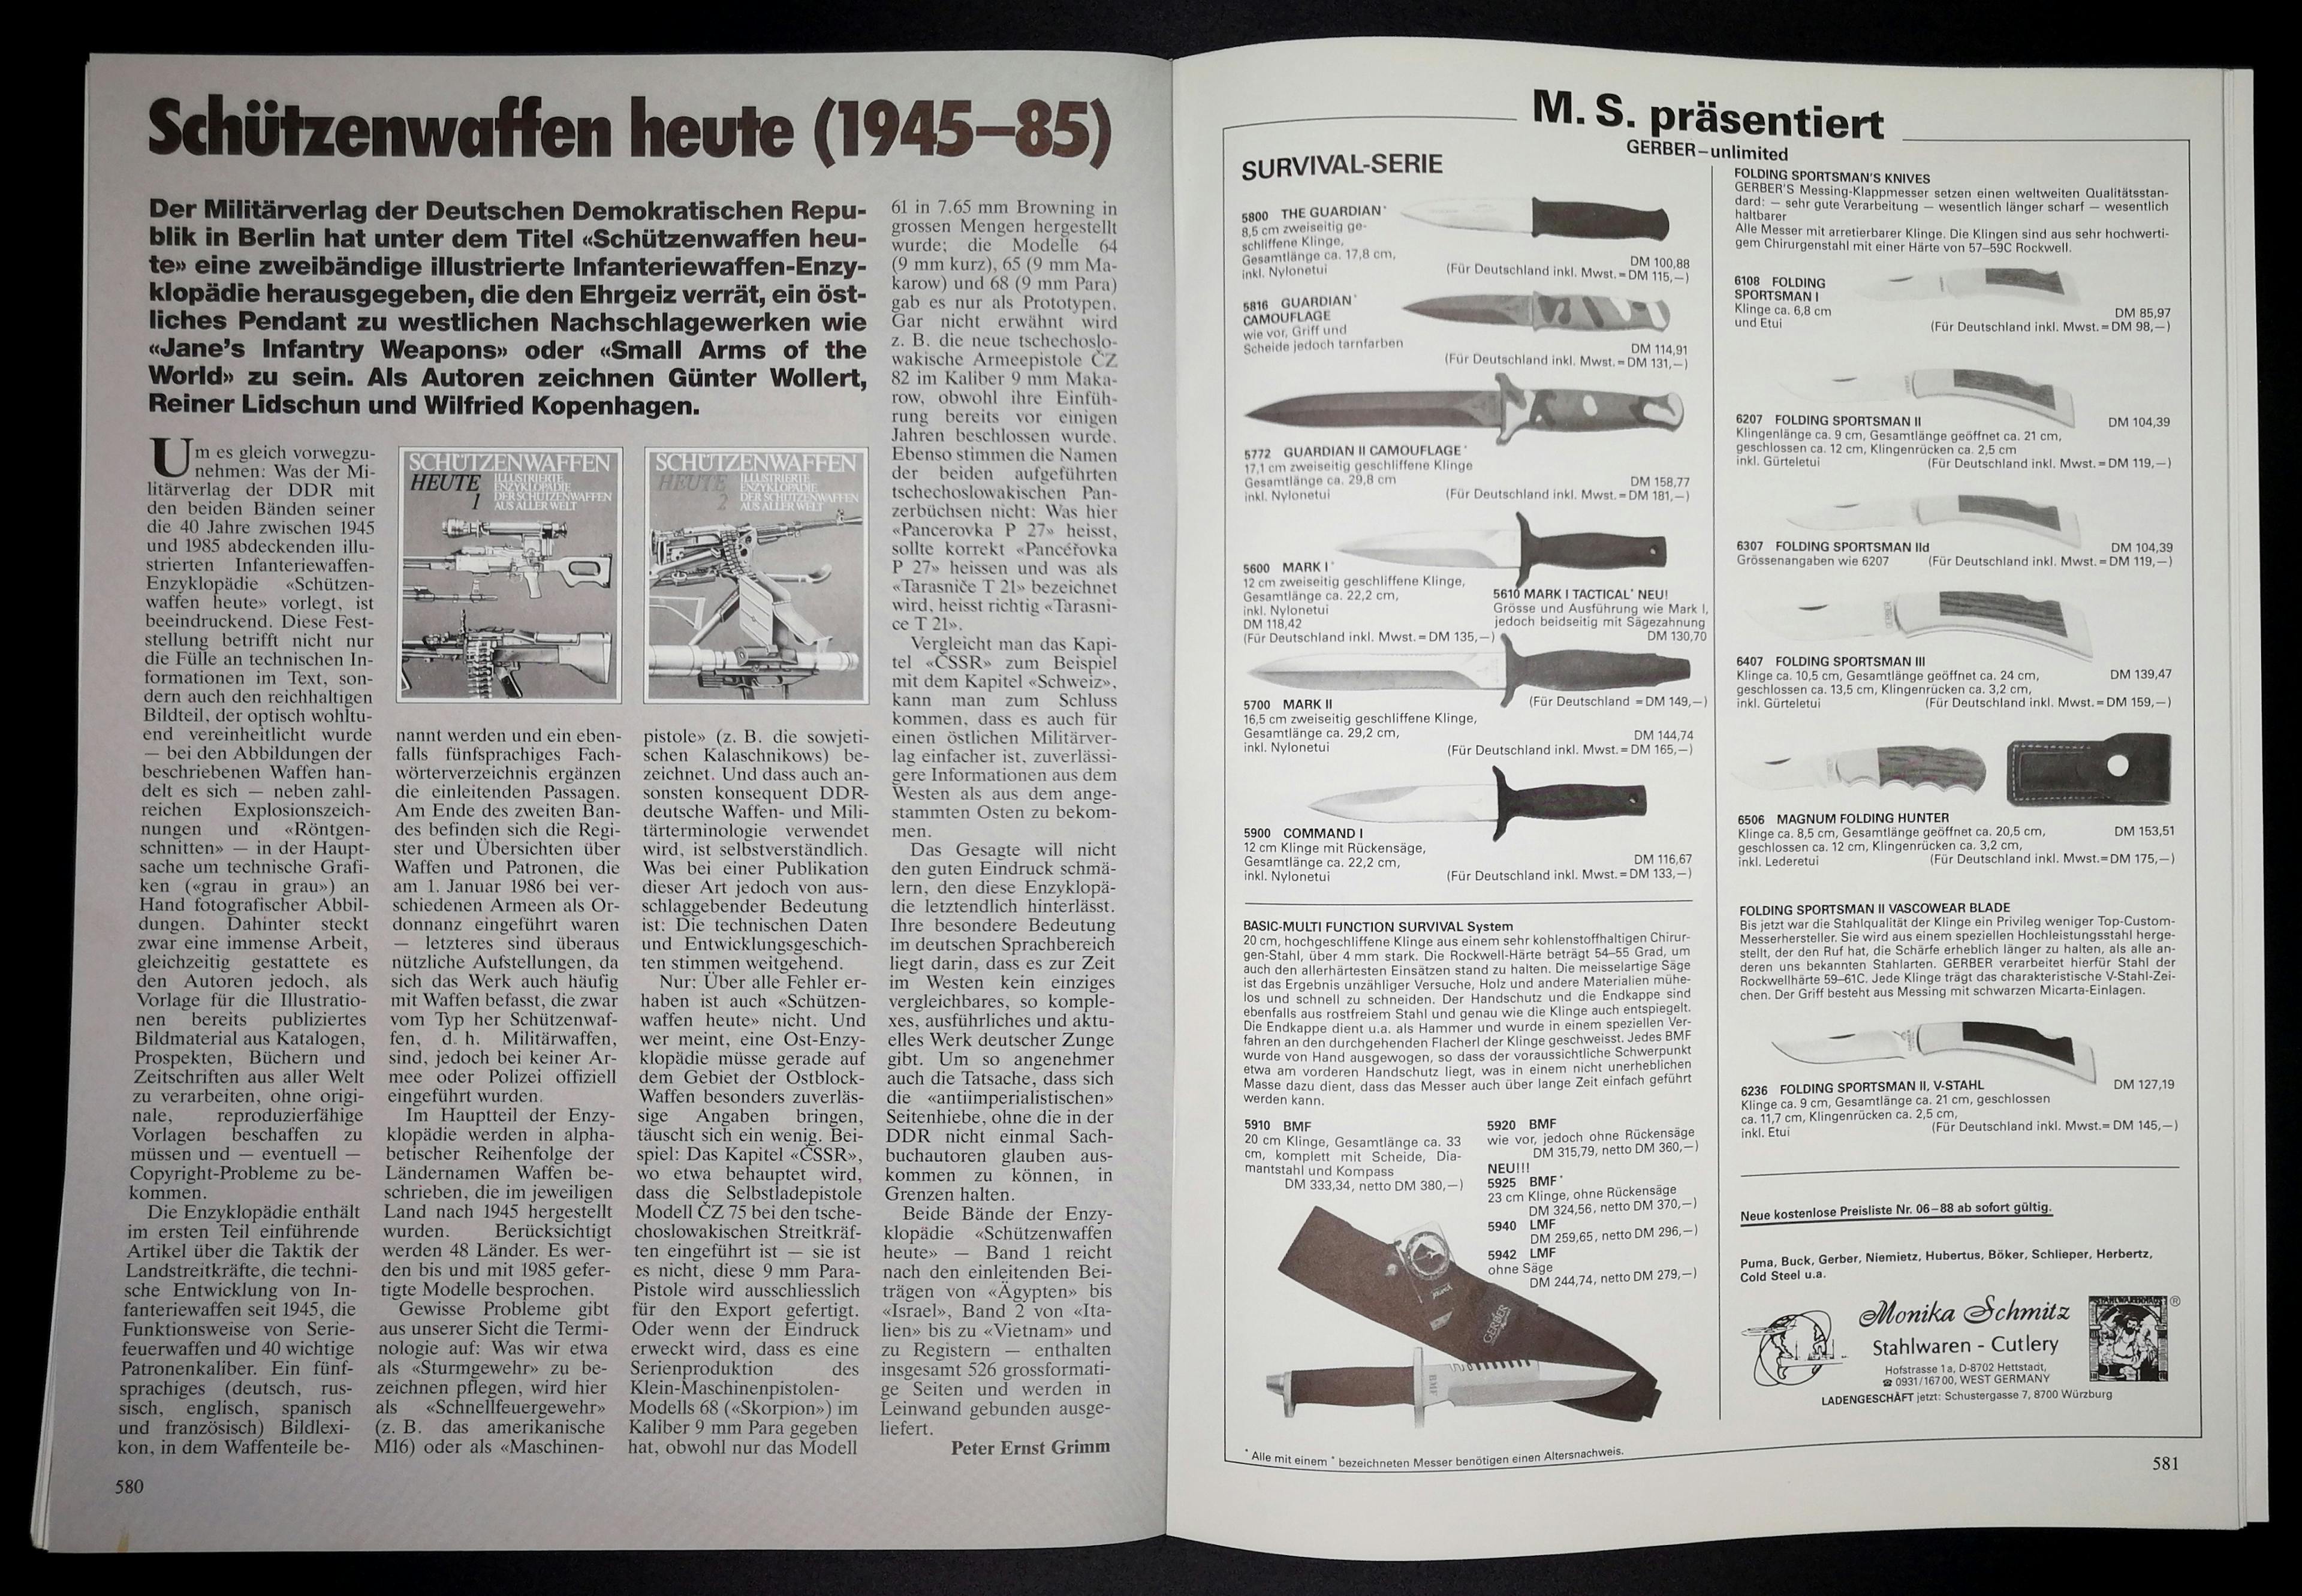 "Schützenwaffen heute (1945-85)", ein DDR-Erzeugnis, ist heute eine mehr oder weniger gesuchte Buchreihe, zusammen mit den "Infanteriewaffen gestern" der gleichen Autoren. Ich besitze die Bücher und kann daher das Lexikahafte bestätigen.
